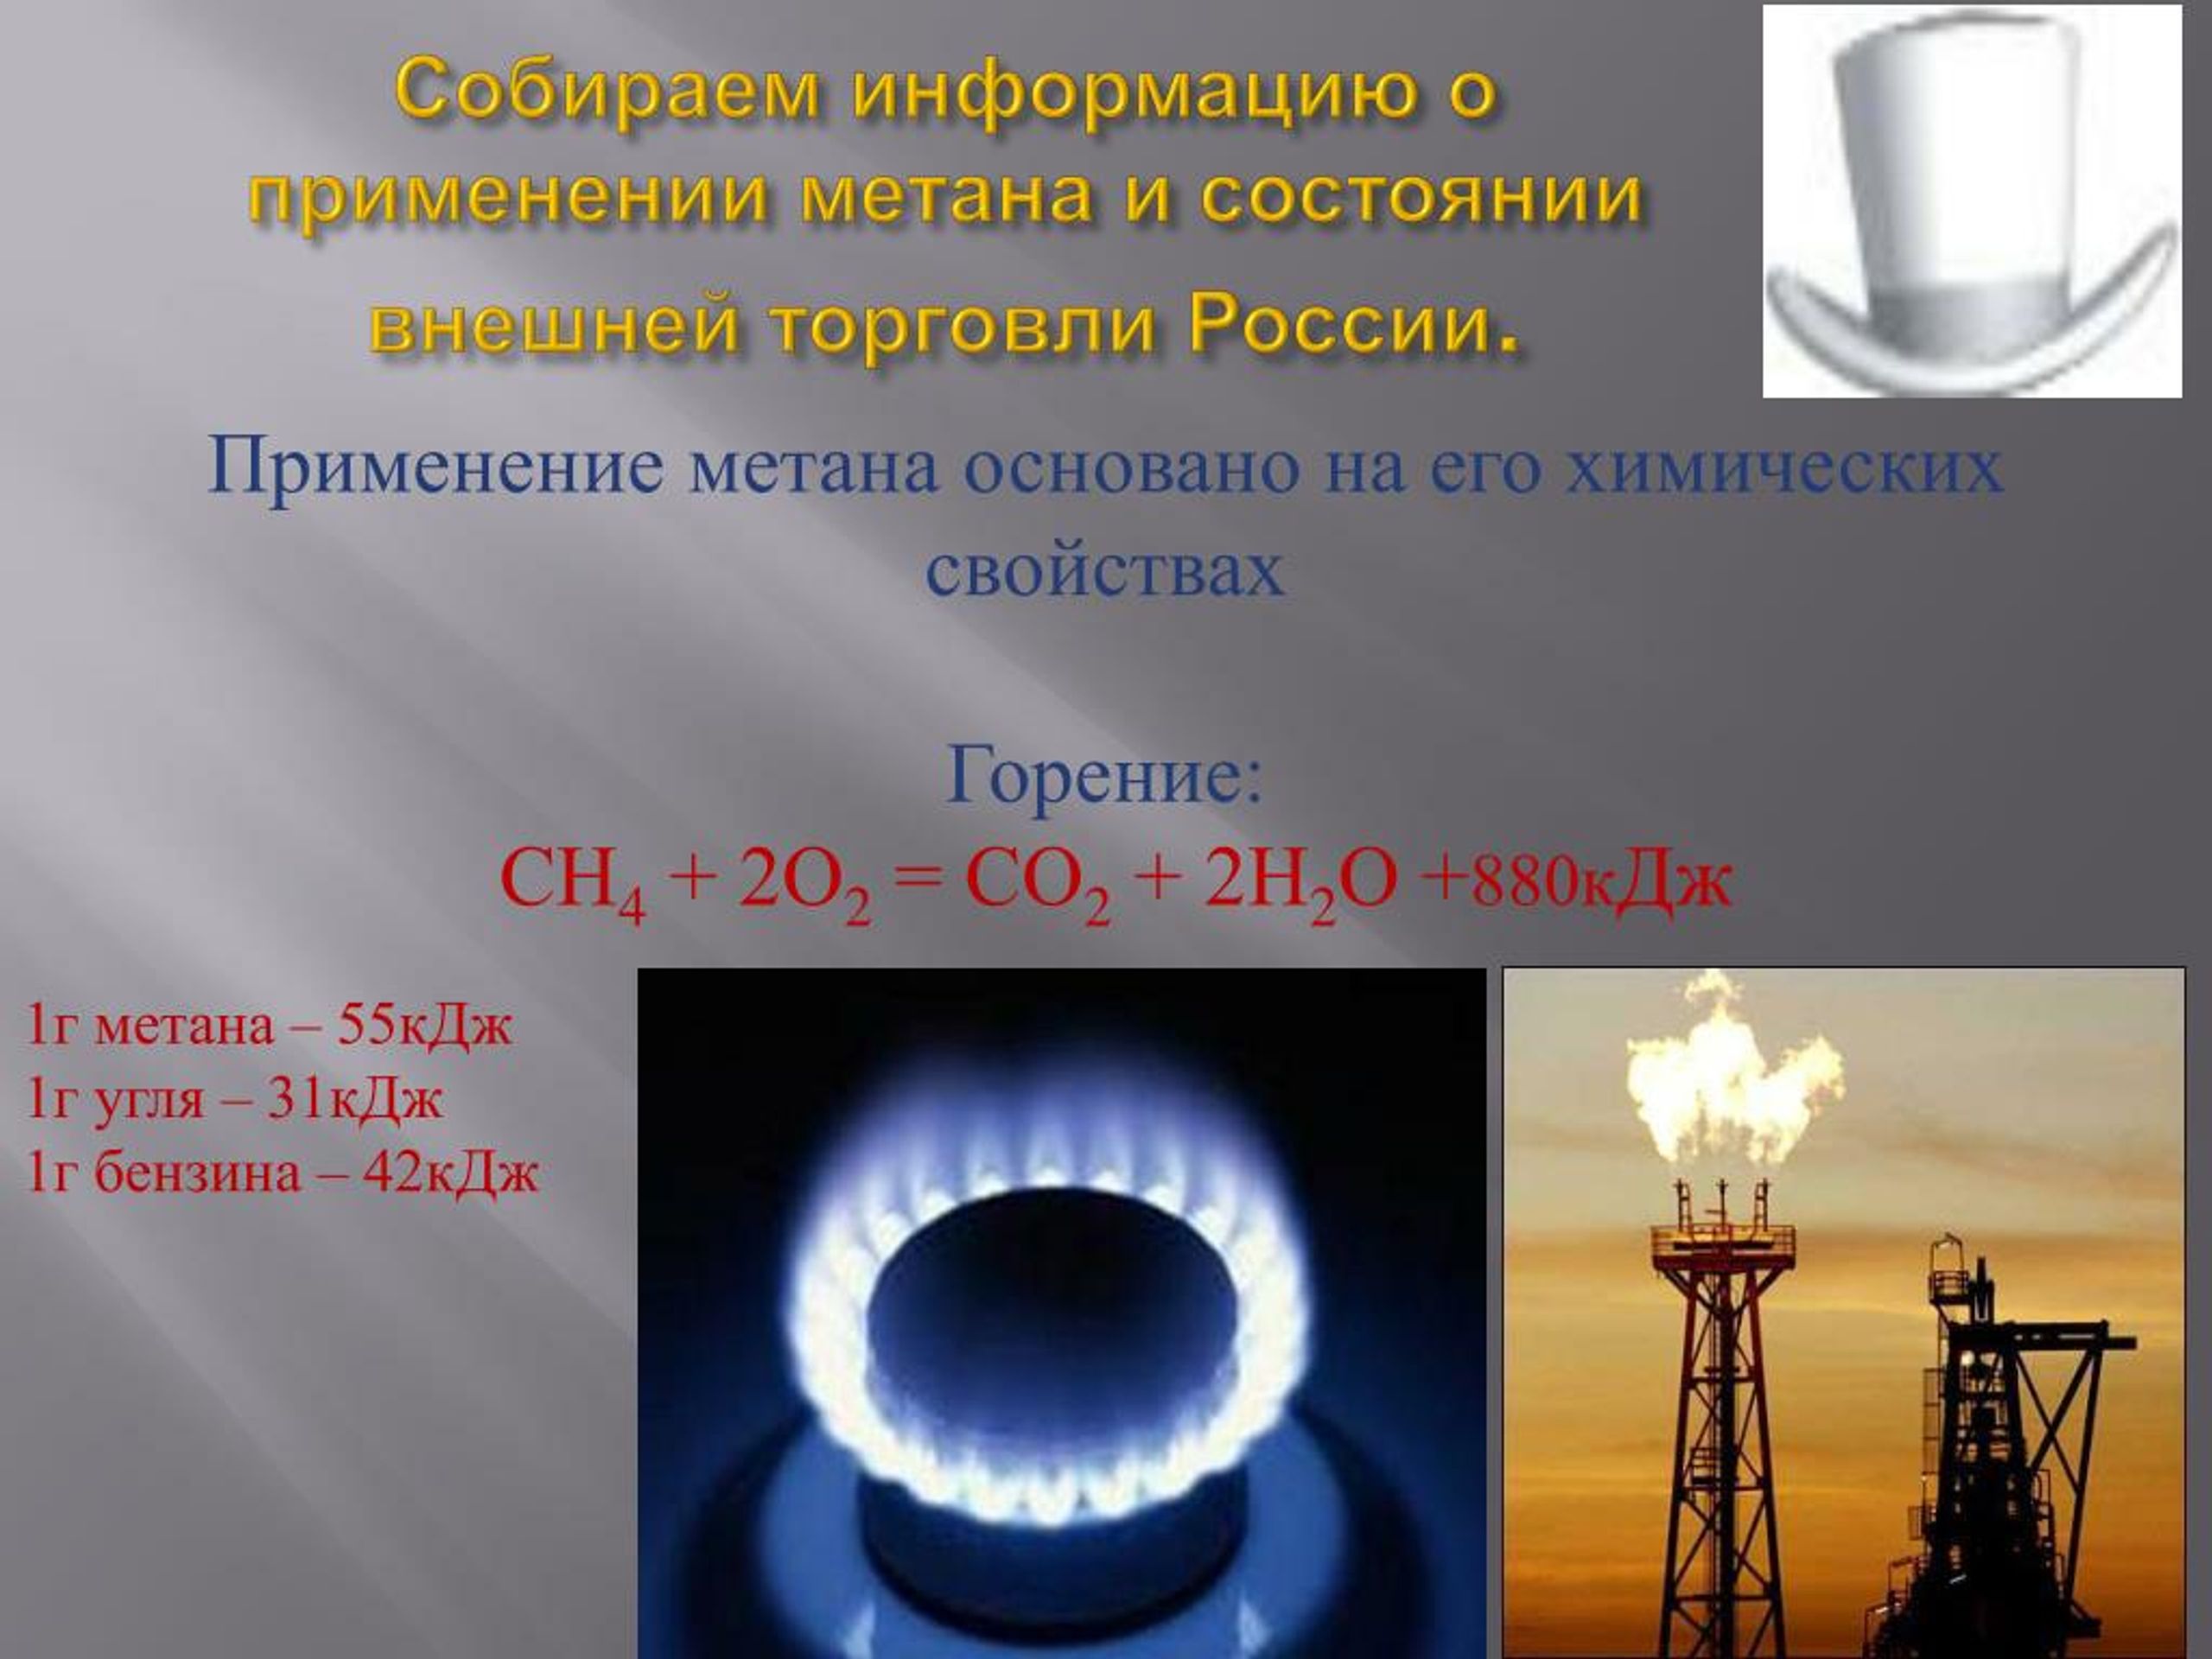 Термохимическое горение метана